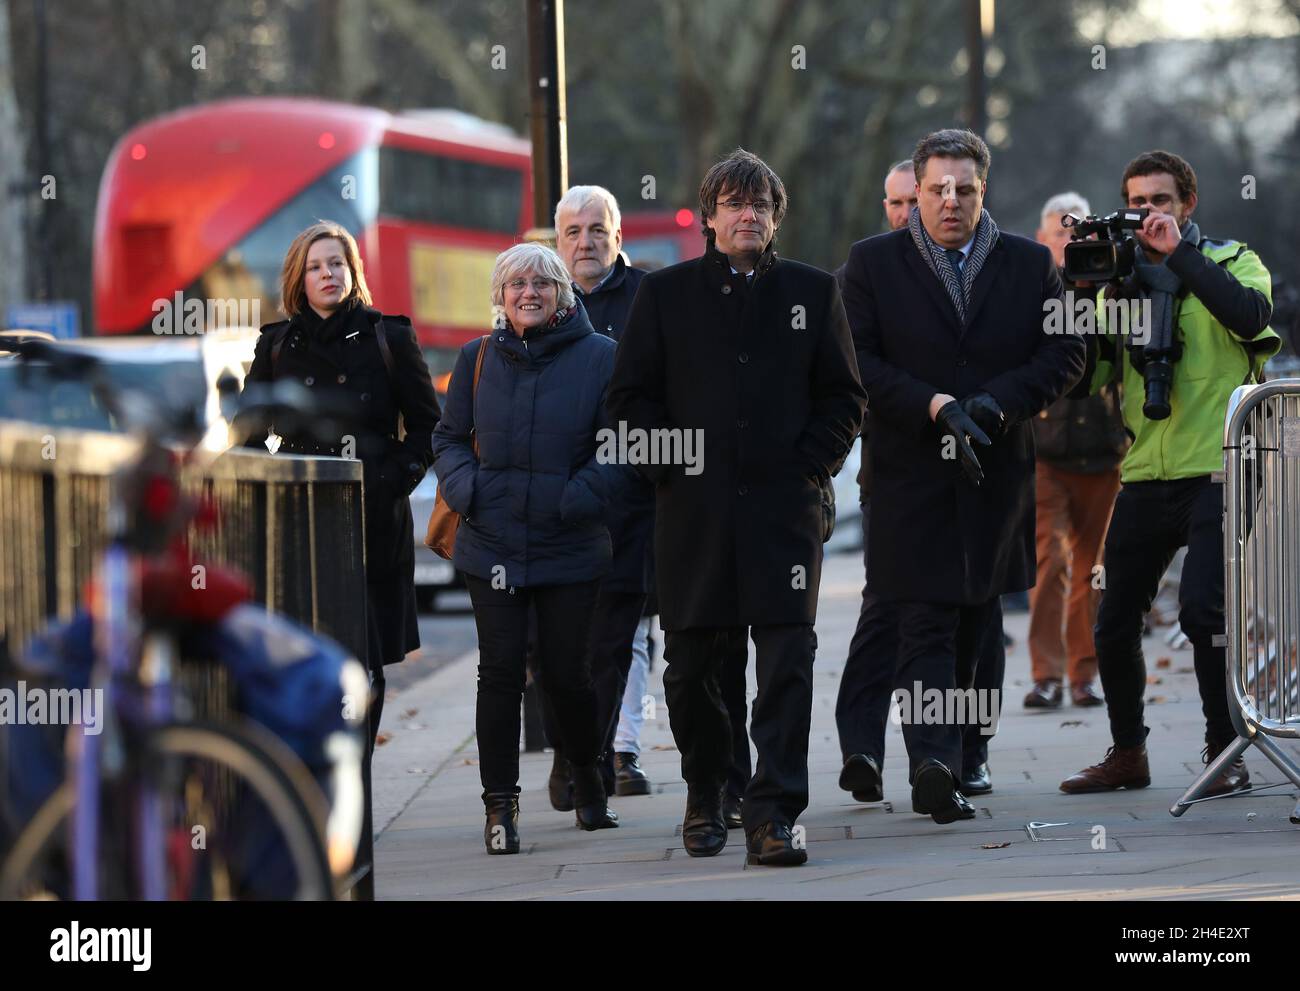 (Centre) l'ancien président régional catalan Carles Puigdemont et le politicien catalan pro-indépendant Clara Ponsati (deuxième de gauche) à Westminster, Londres, dans le cadre d'une visite au Royaume-Uni.Photo datée du jeudi 13 décembre 2018 Banque D'Images